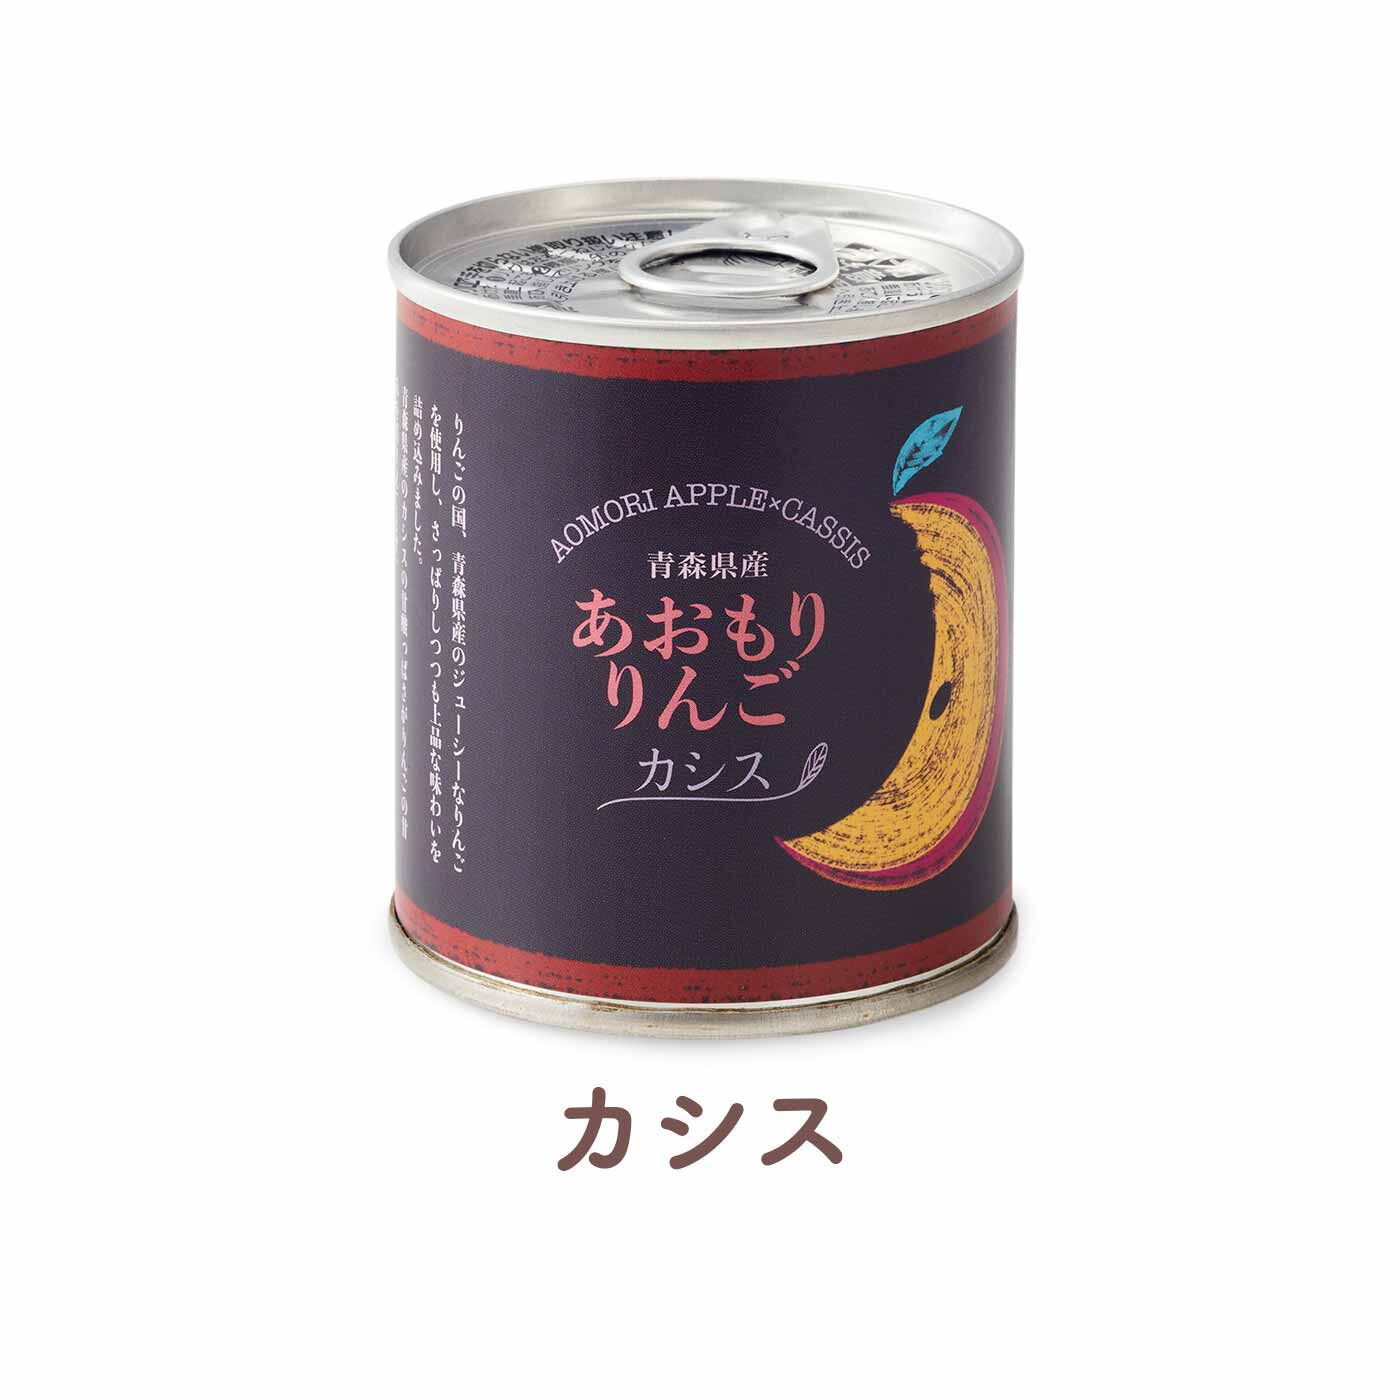 FELISSIMO PARTNERS|美味しいフルーツをいつでも 青森自慢のデザートりんご缶 3缶セットの会（6回予約）|青森県産のカシスの甘酸っぱさがりんごの甘さを引き立てます。色の美しさにもうっとり。